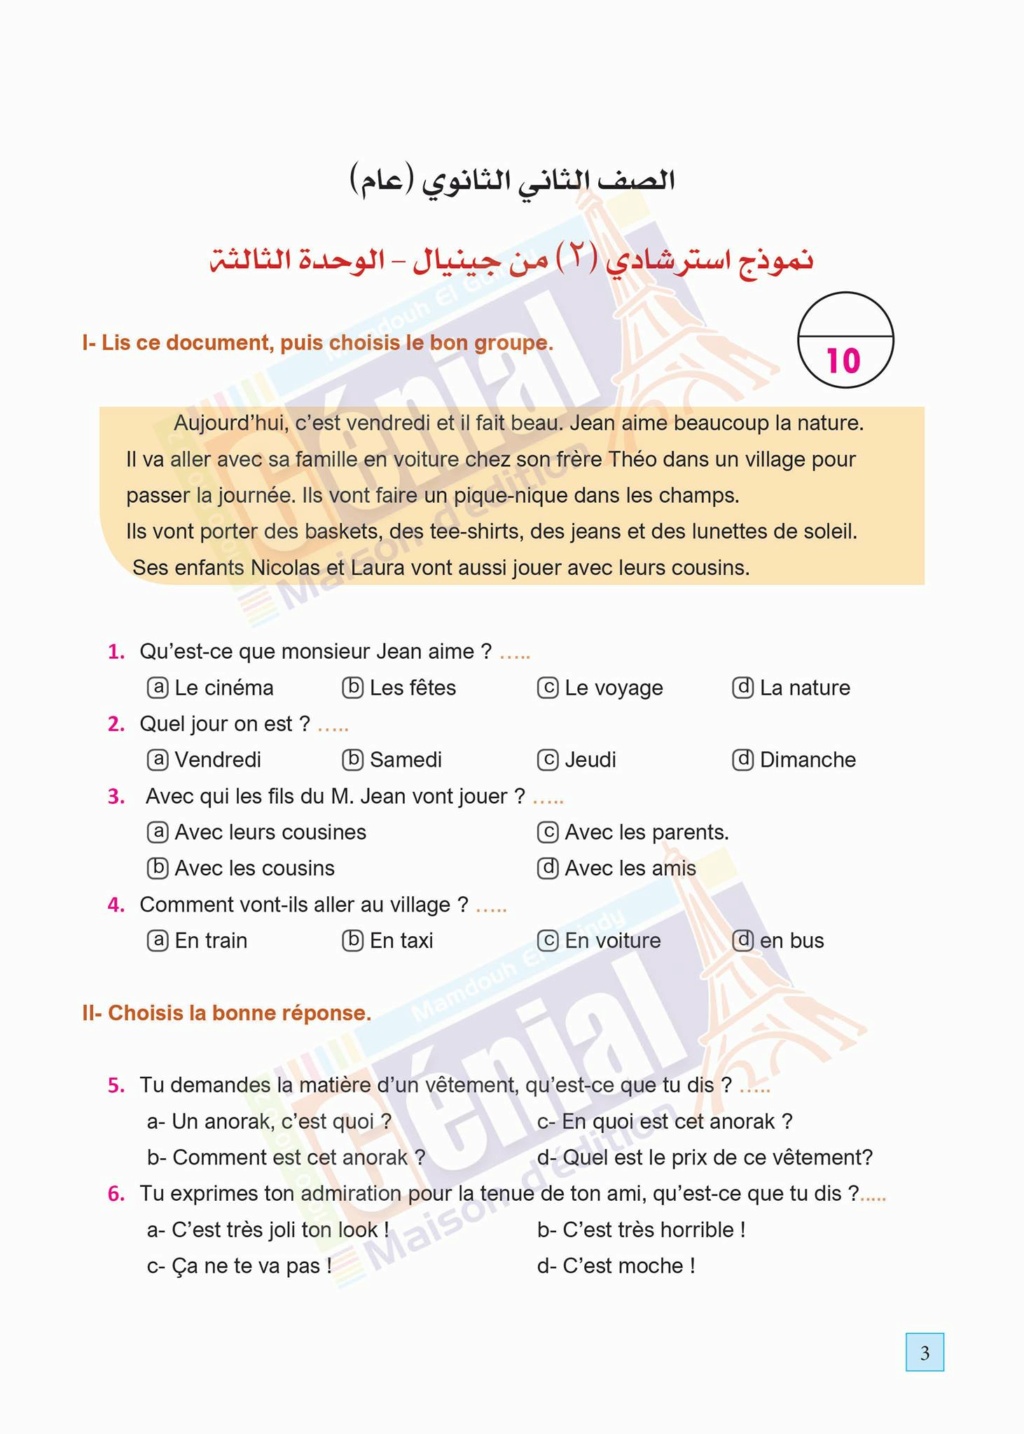 نماذج امتحانات لغة فرنسية استرشادية من جينيال للصف الثاني الثانوي ترم ثاني بالاجابات